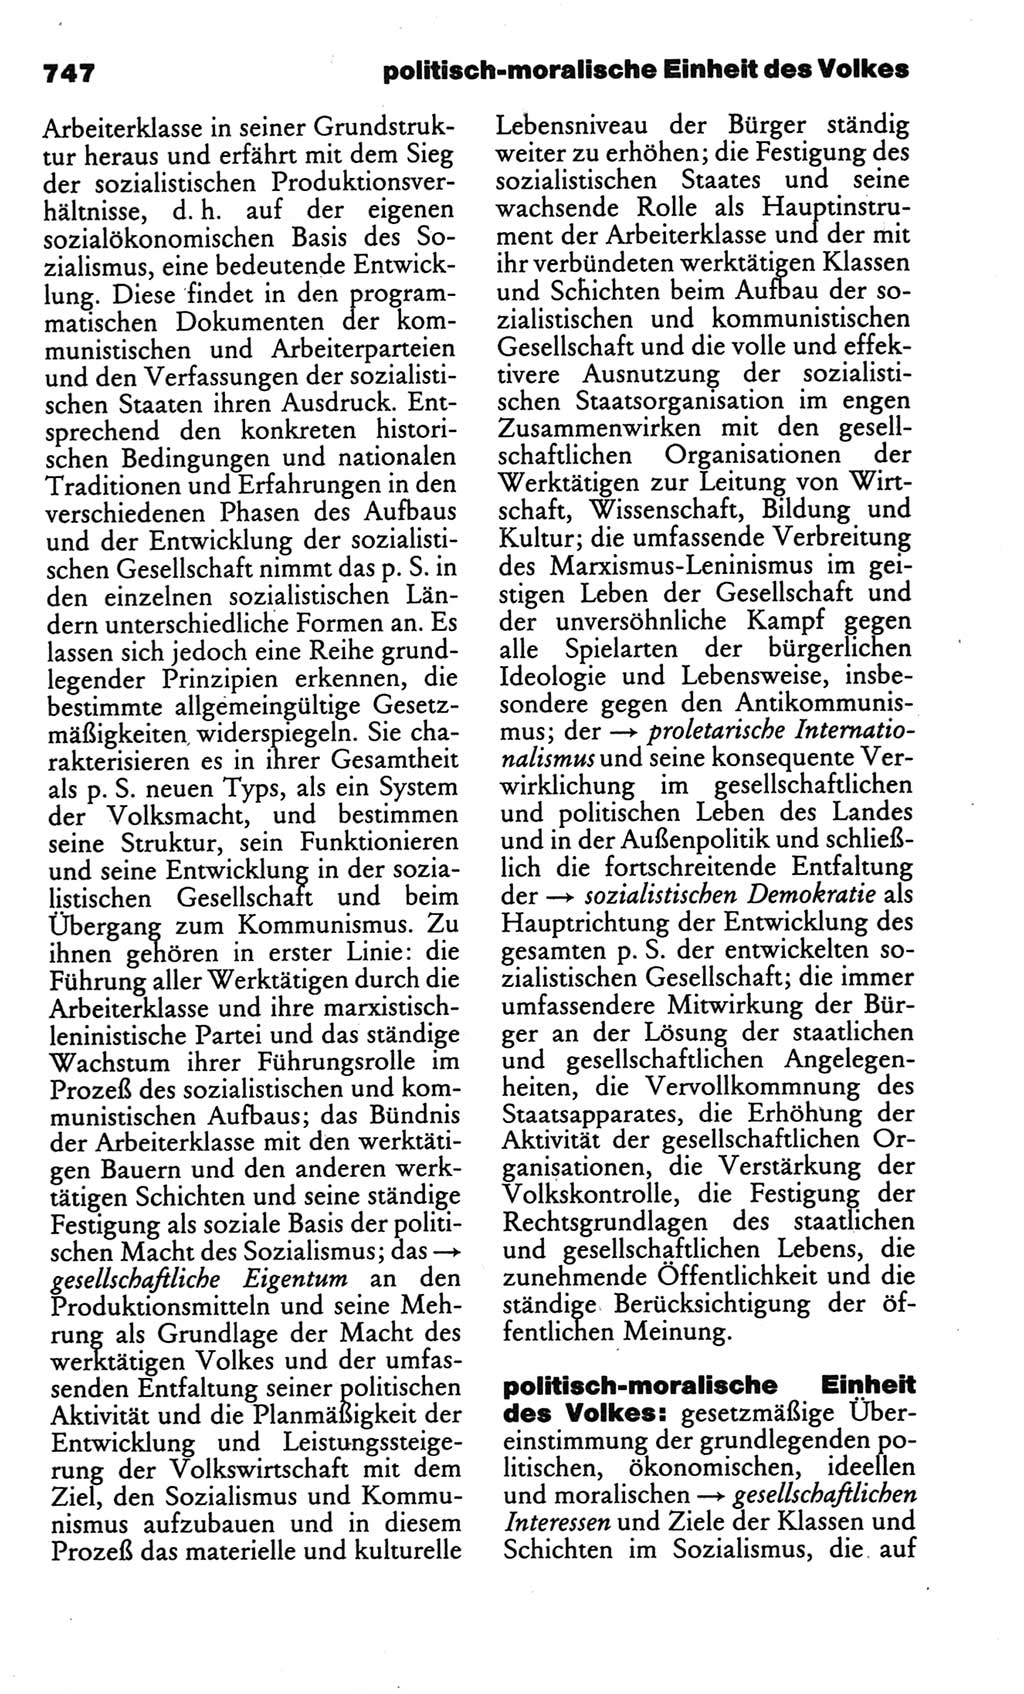 Kleines politisches Wörterbuch [Deutsche Demokratische Republik (DDR)] 1986, Seite 747 (Kl. pol. Wb. DDR 1986, S. 747)